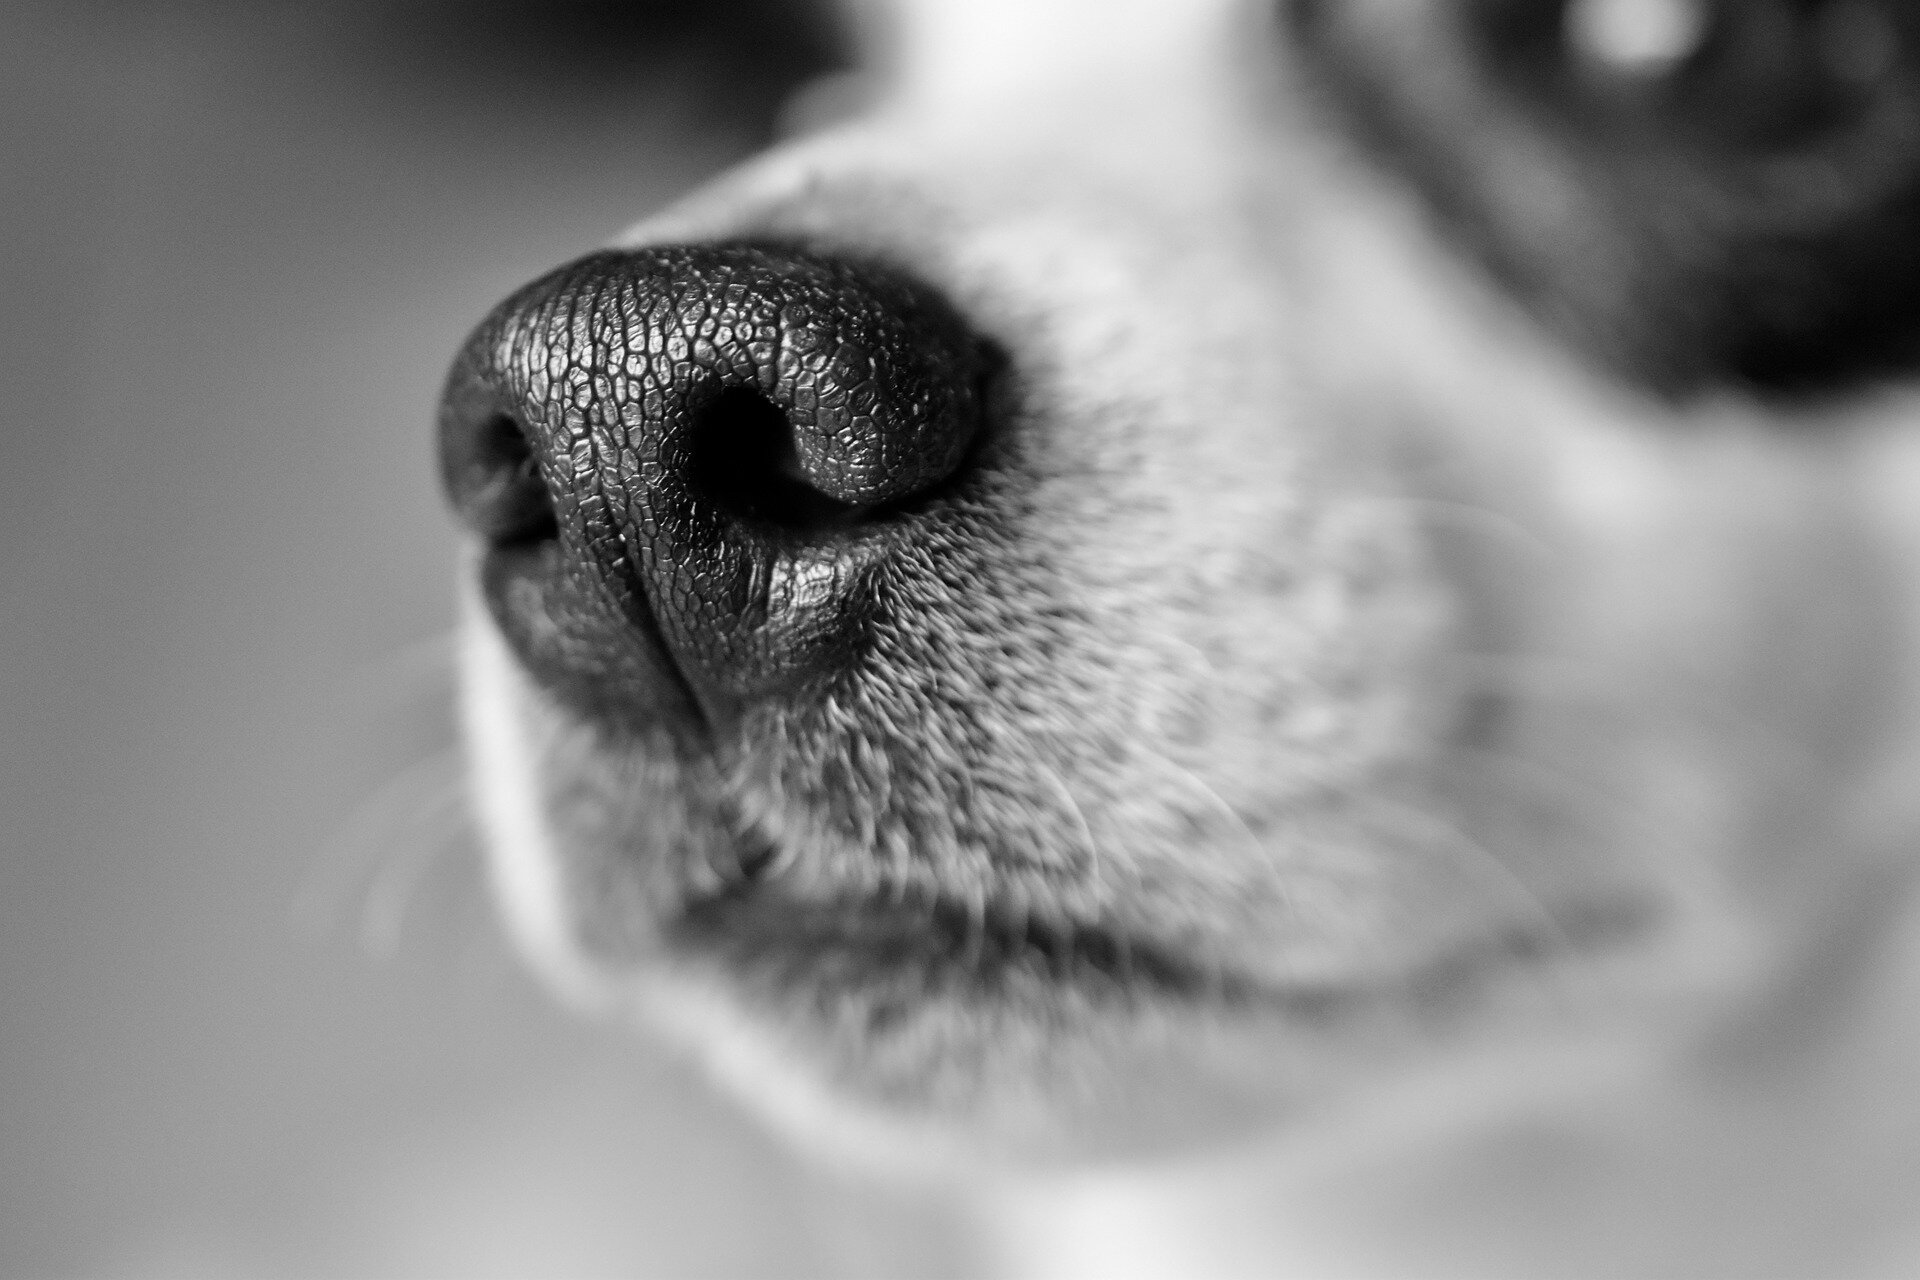  siyah beyaz köpek fotoğrafı